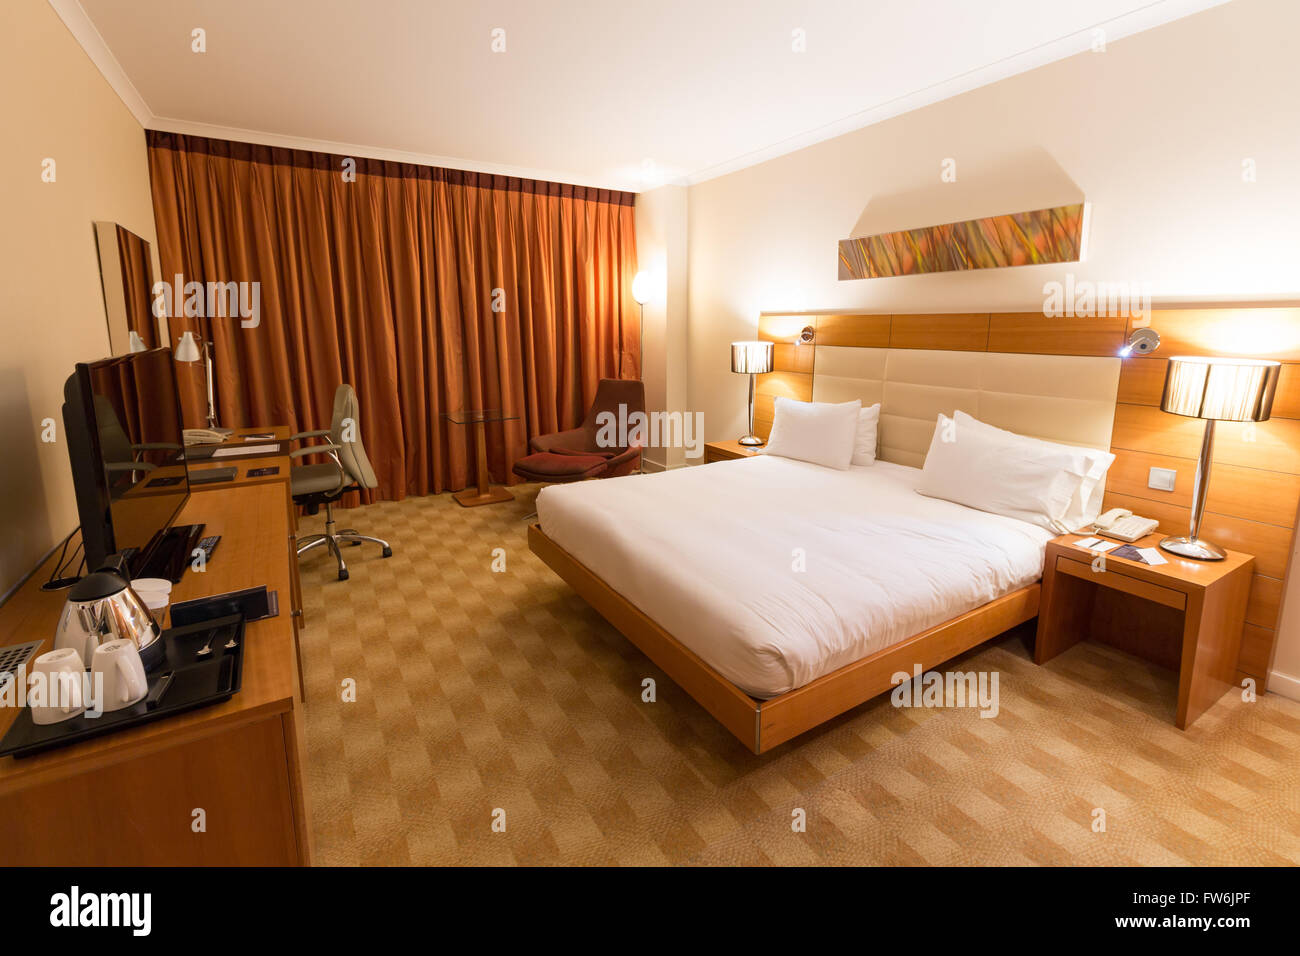 La habitación del hotel Hilton Diagonal Mar Barcelona, España Foto de stock